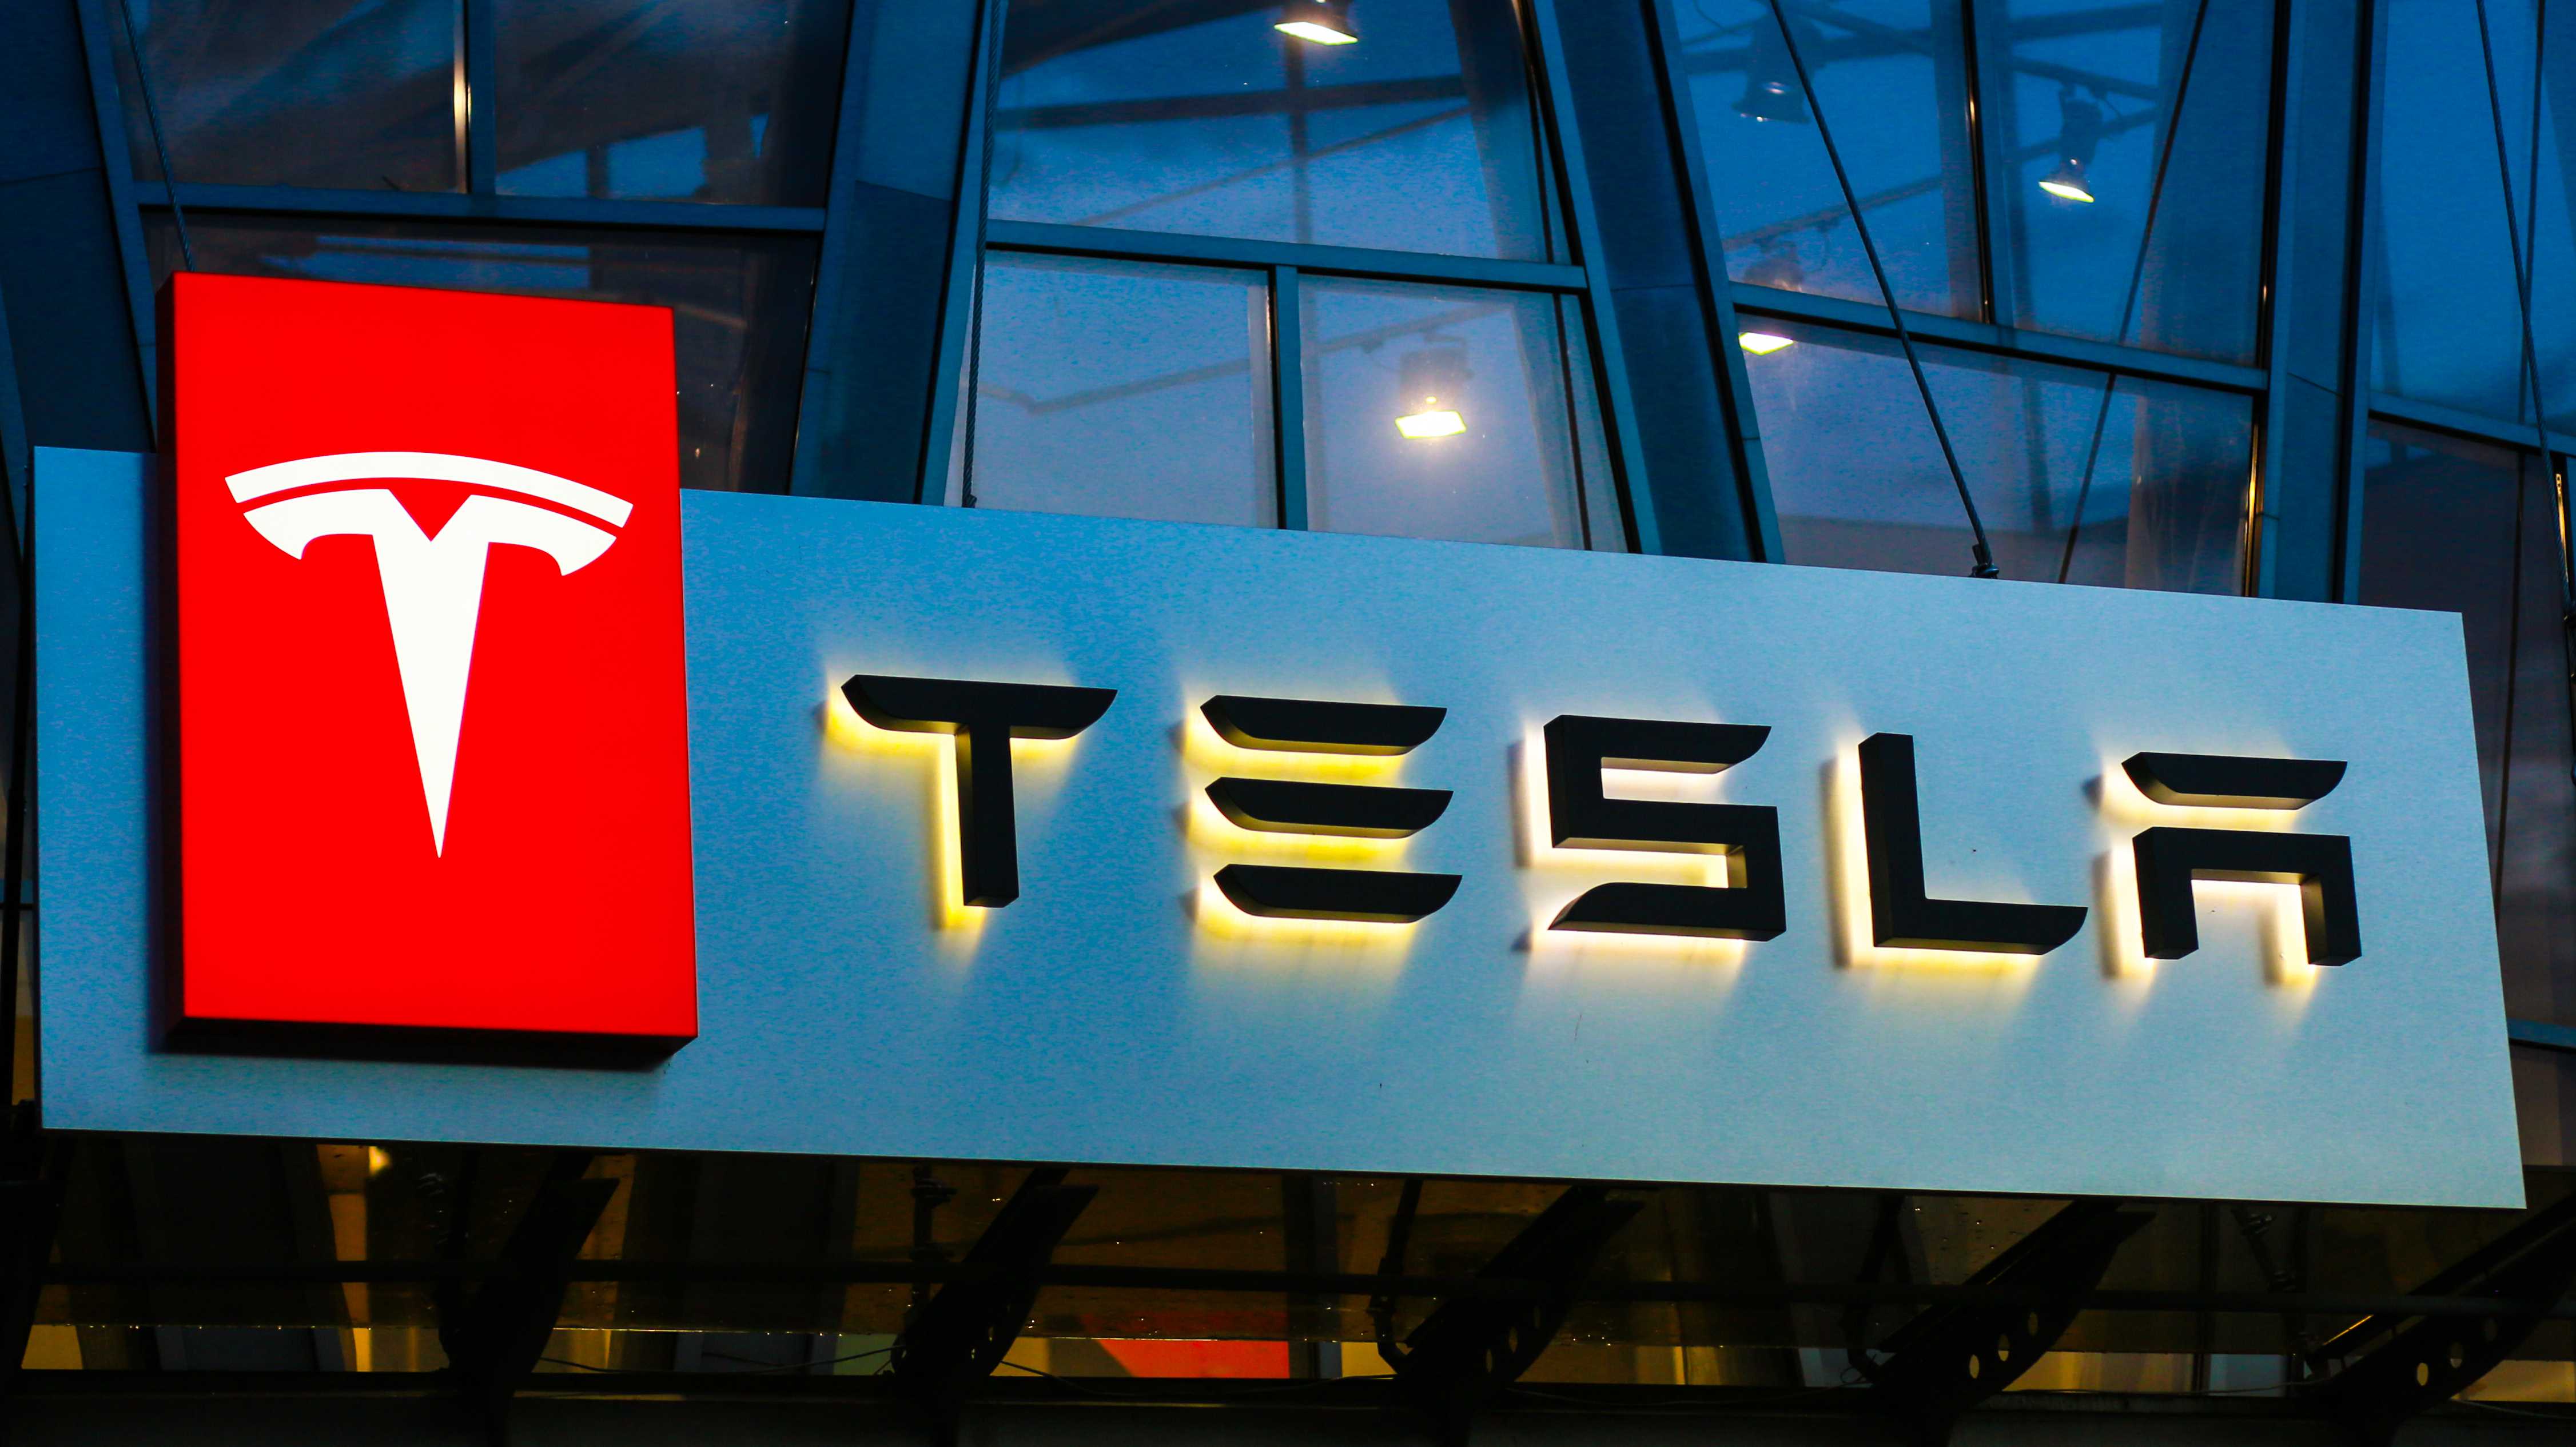 Tesla-Logo auf Gebäude über Autoverkaufsstelle – Symbol der Luxusmarke und ihrer Abkehr von günstigen Elektroauto-Plänen